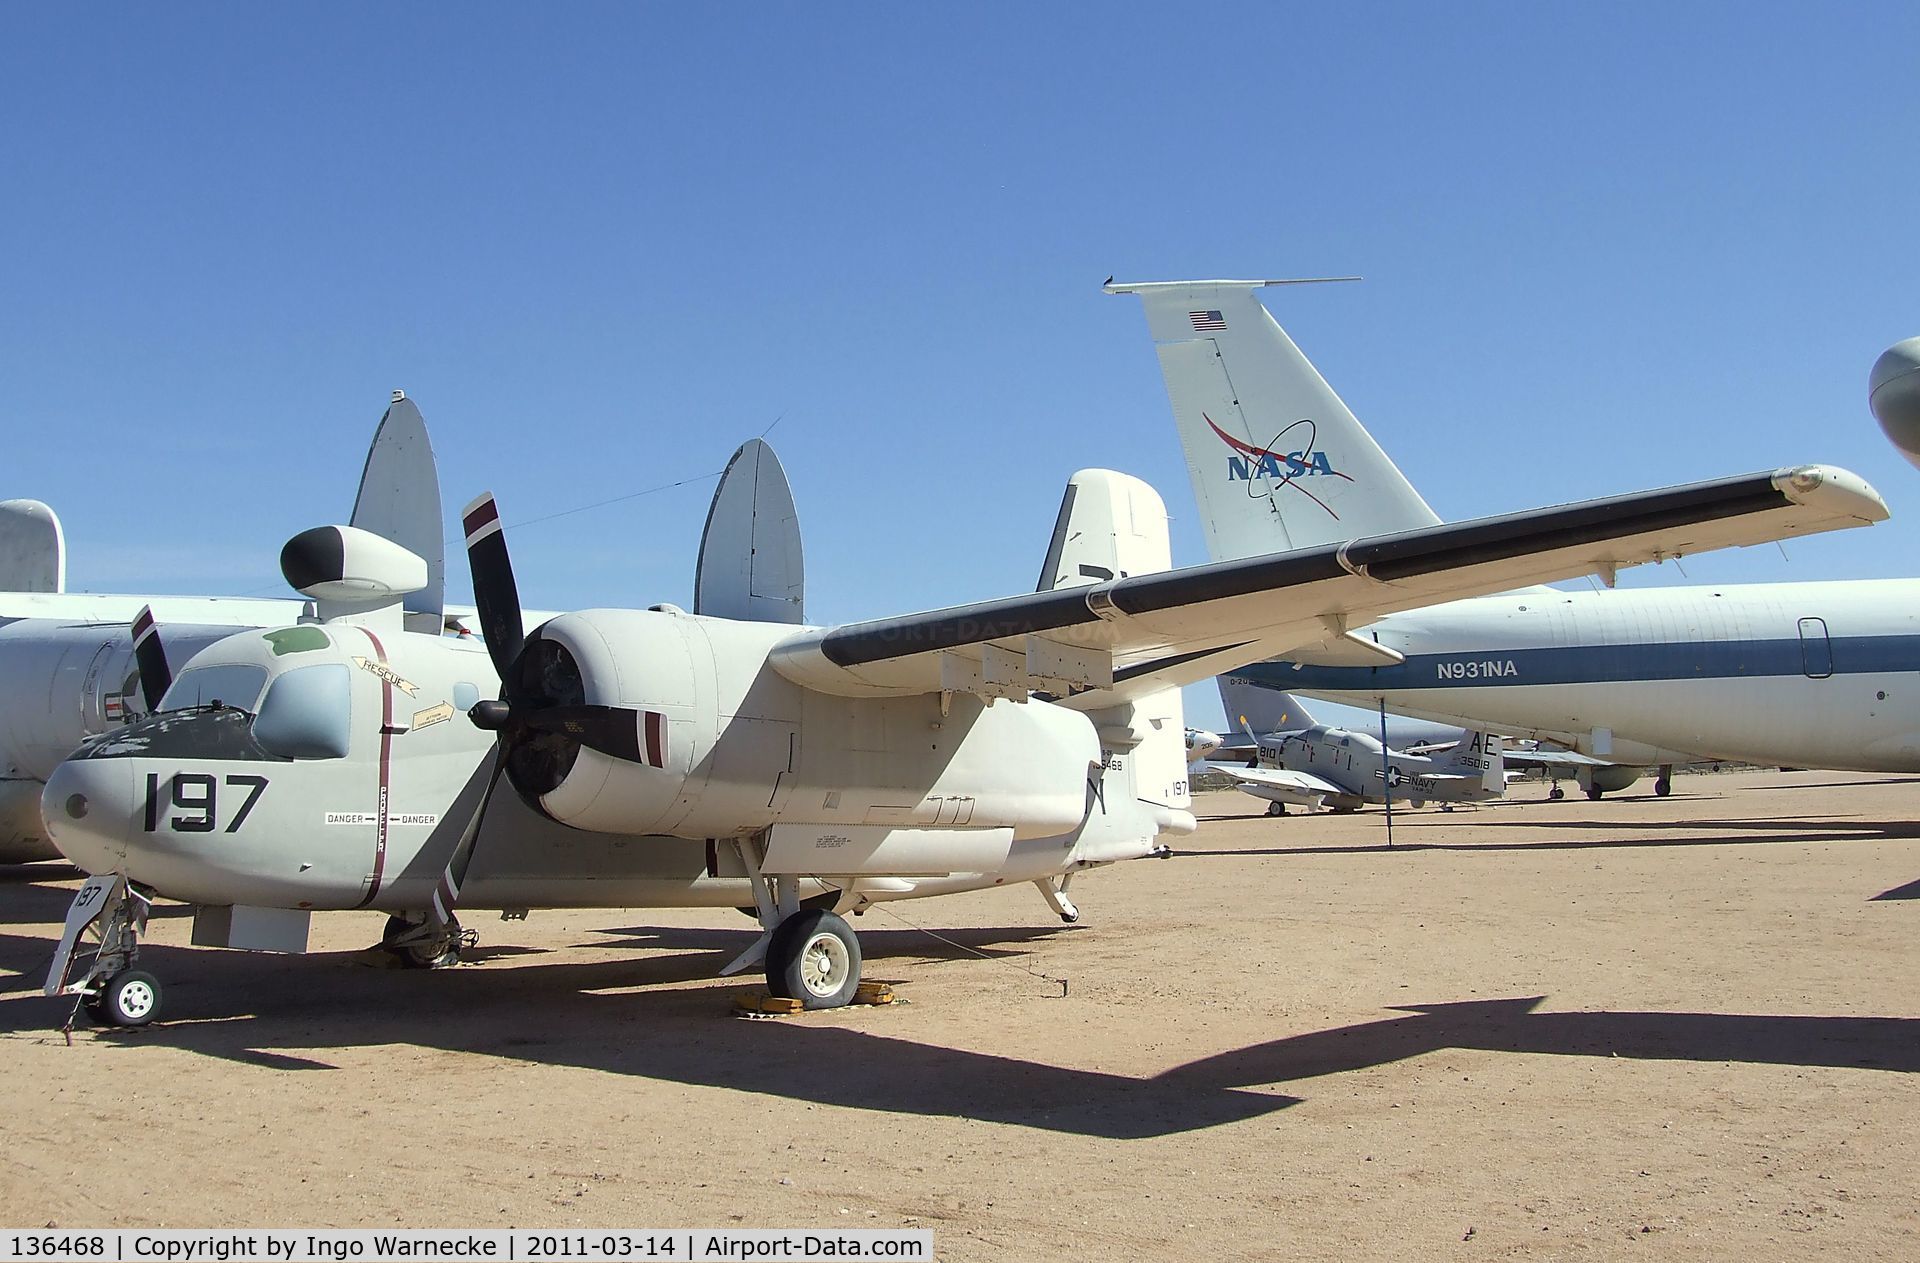 136468, Grumman S-2A Tracker C/N 377, Grumman S-2A Tracker at the Pima Air & Space Museum, Tucson AZ